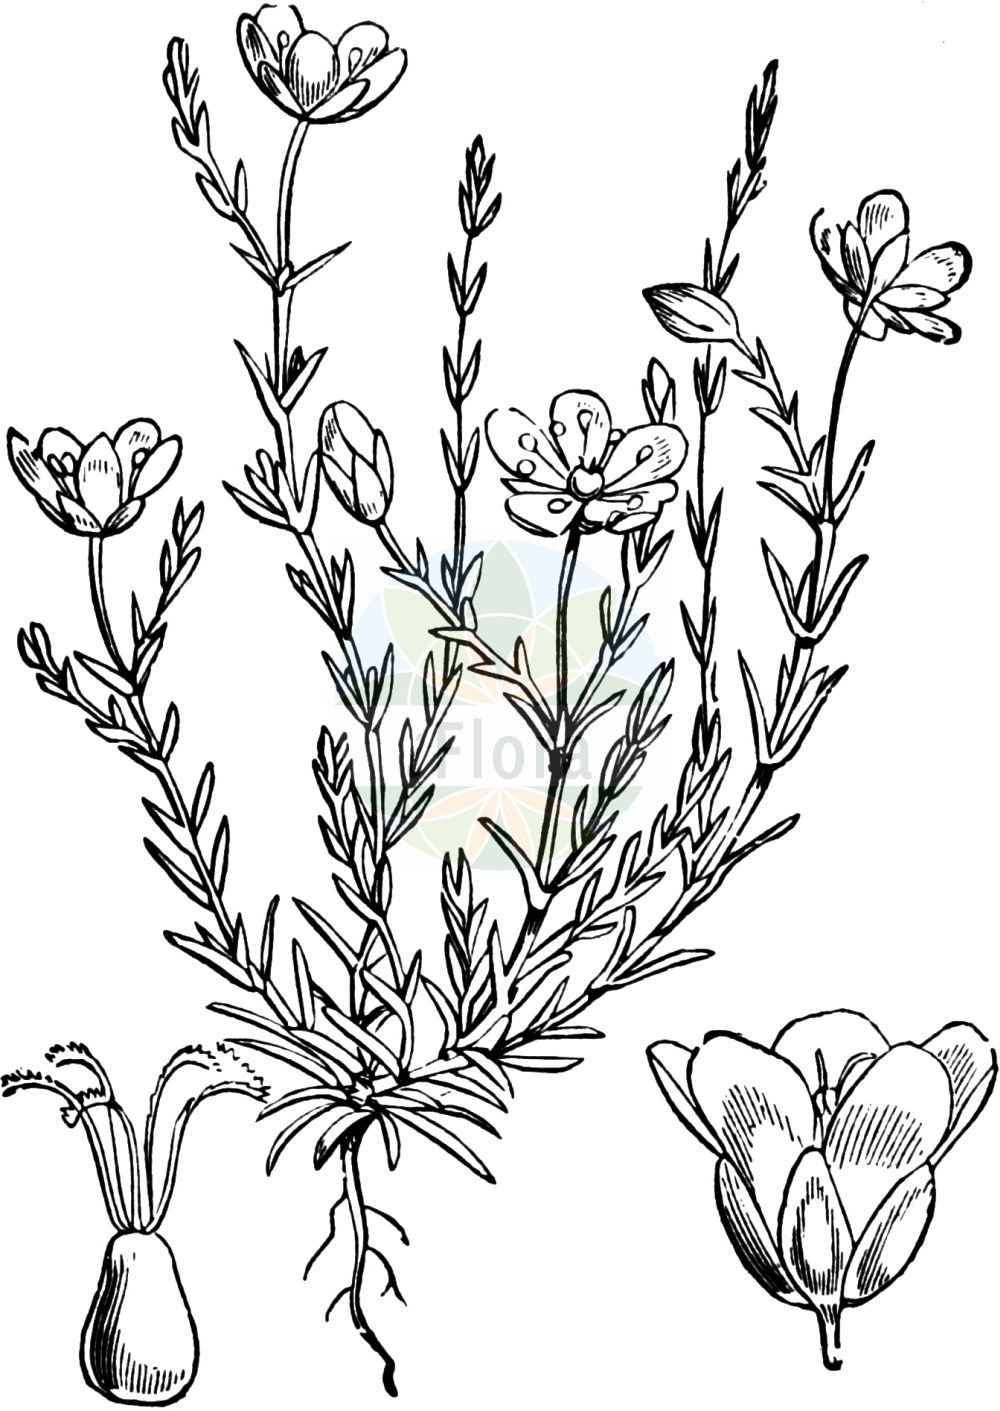 Historische Abbildung von Sagina nodosa (Knotiges Mastkraut - Knotted Pearlwort). Das Bild zeigt Blatt, Bluete, Frucht und Same. ---- Historical Drawing of Sagina nodosa (Knotiges Mastkraut - Knotted Pearlwort). The image is showing leaf, flower, fruit and seed.(Sagina nodosa,Knotiges Mastkraut,Knotted Pearlwort,Spergula nodosa,Sagina nodosa,Knotiges Mastkraut,Knoten-Mastkraut,Knotted Pearlwort,Sagina,Mastkraut,Pearlwort,Caryophyllaceae,Nelkengewächse,Pink family,Blatt,Bluete,Frucht,Same,leaf,flower,fruit,seed,Fitch et al. (1880))